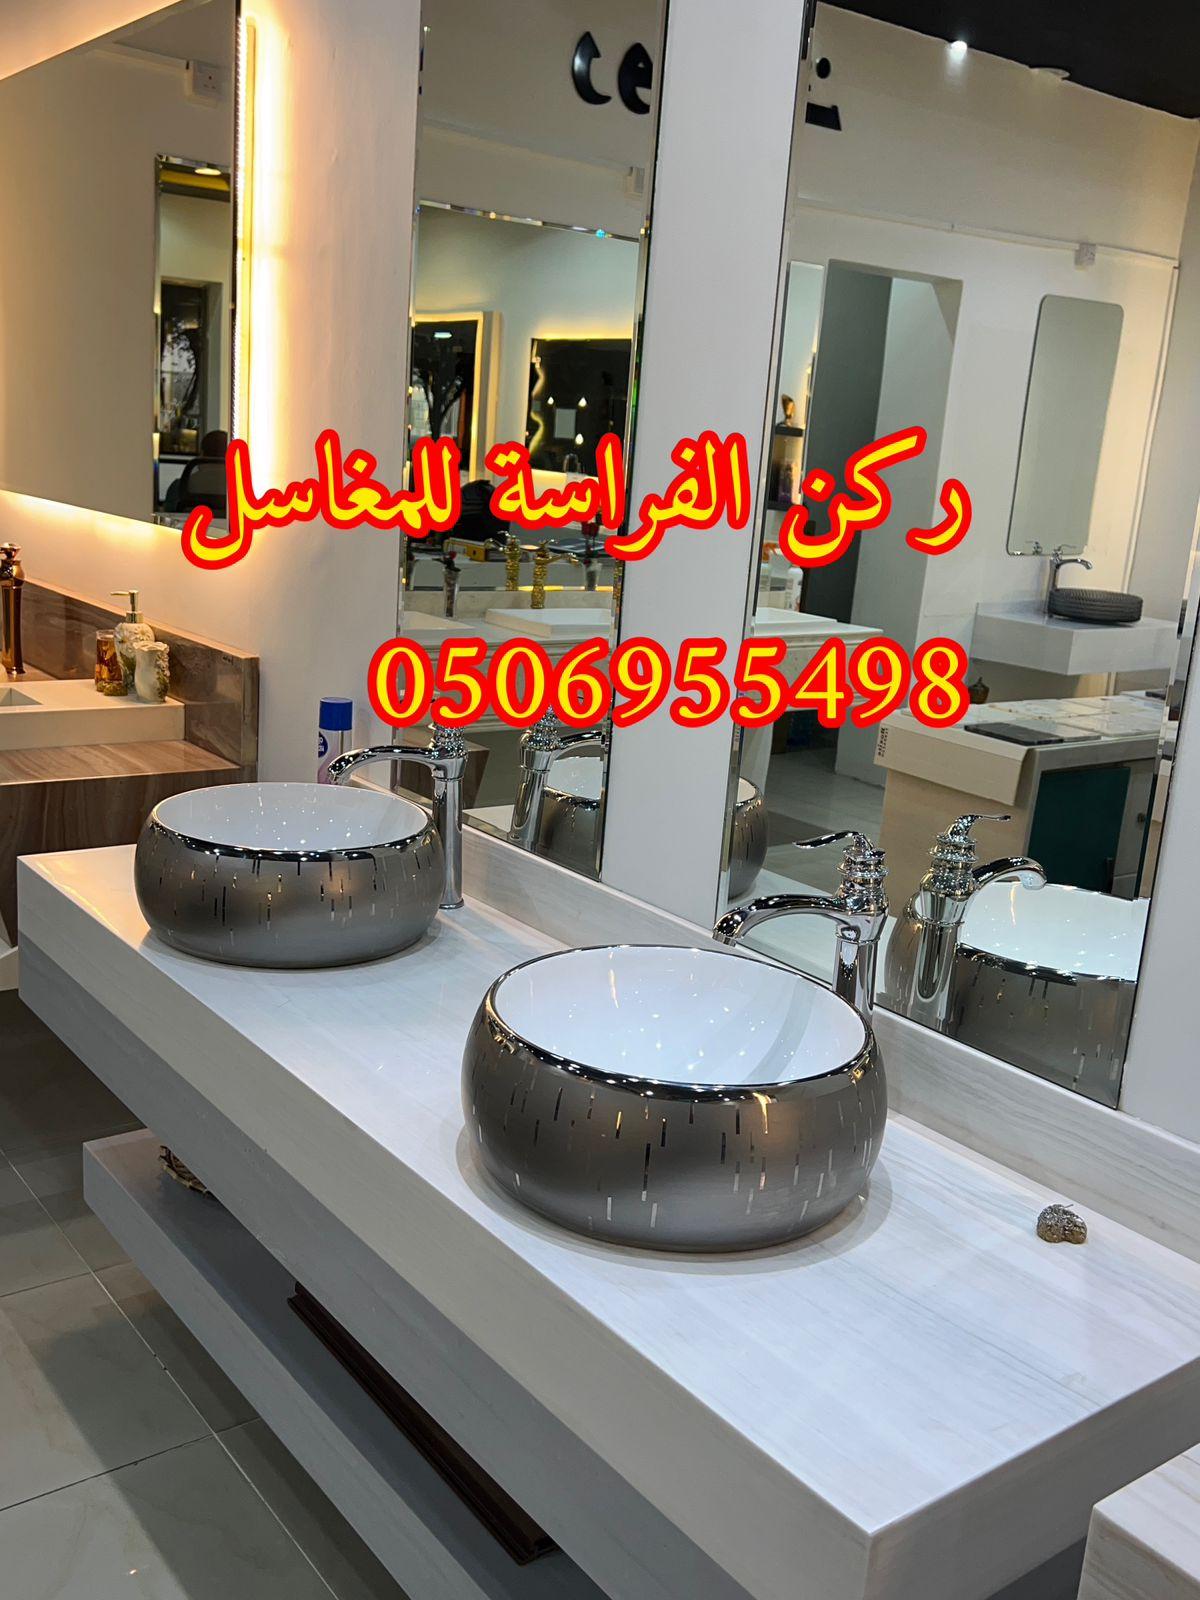 الرياض - تصاميم مغاسل رخام للمجالس في الرياض,0506955498 757084533